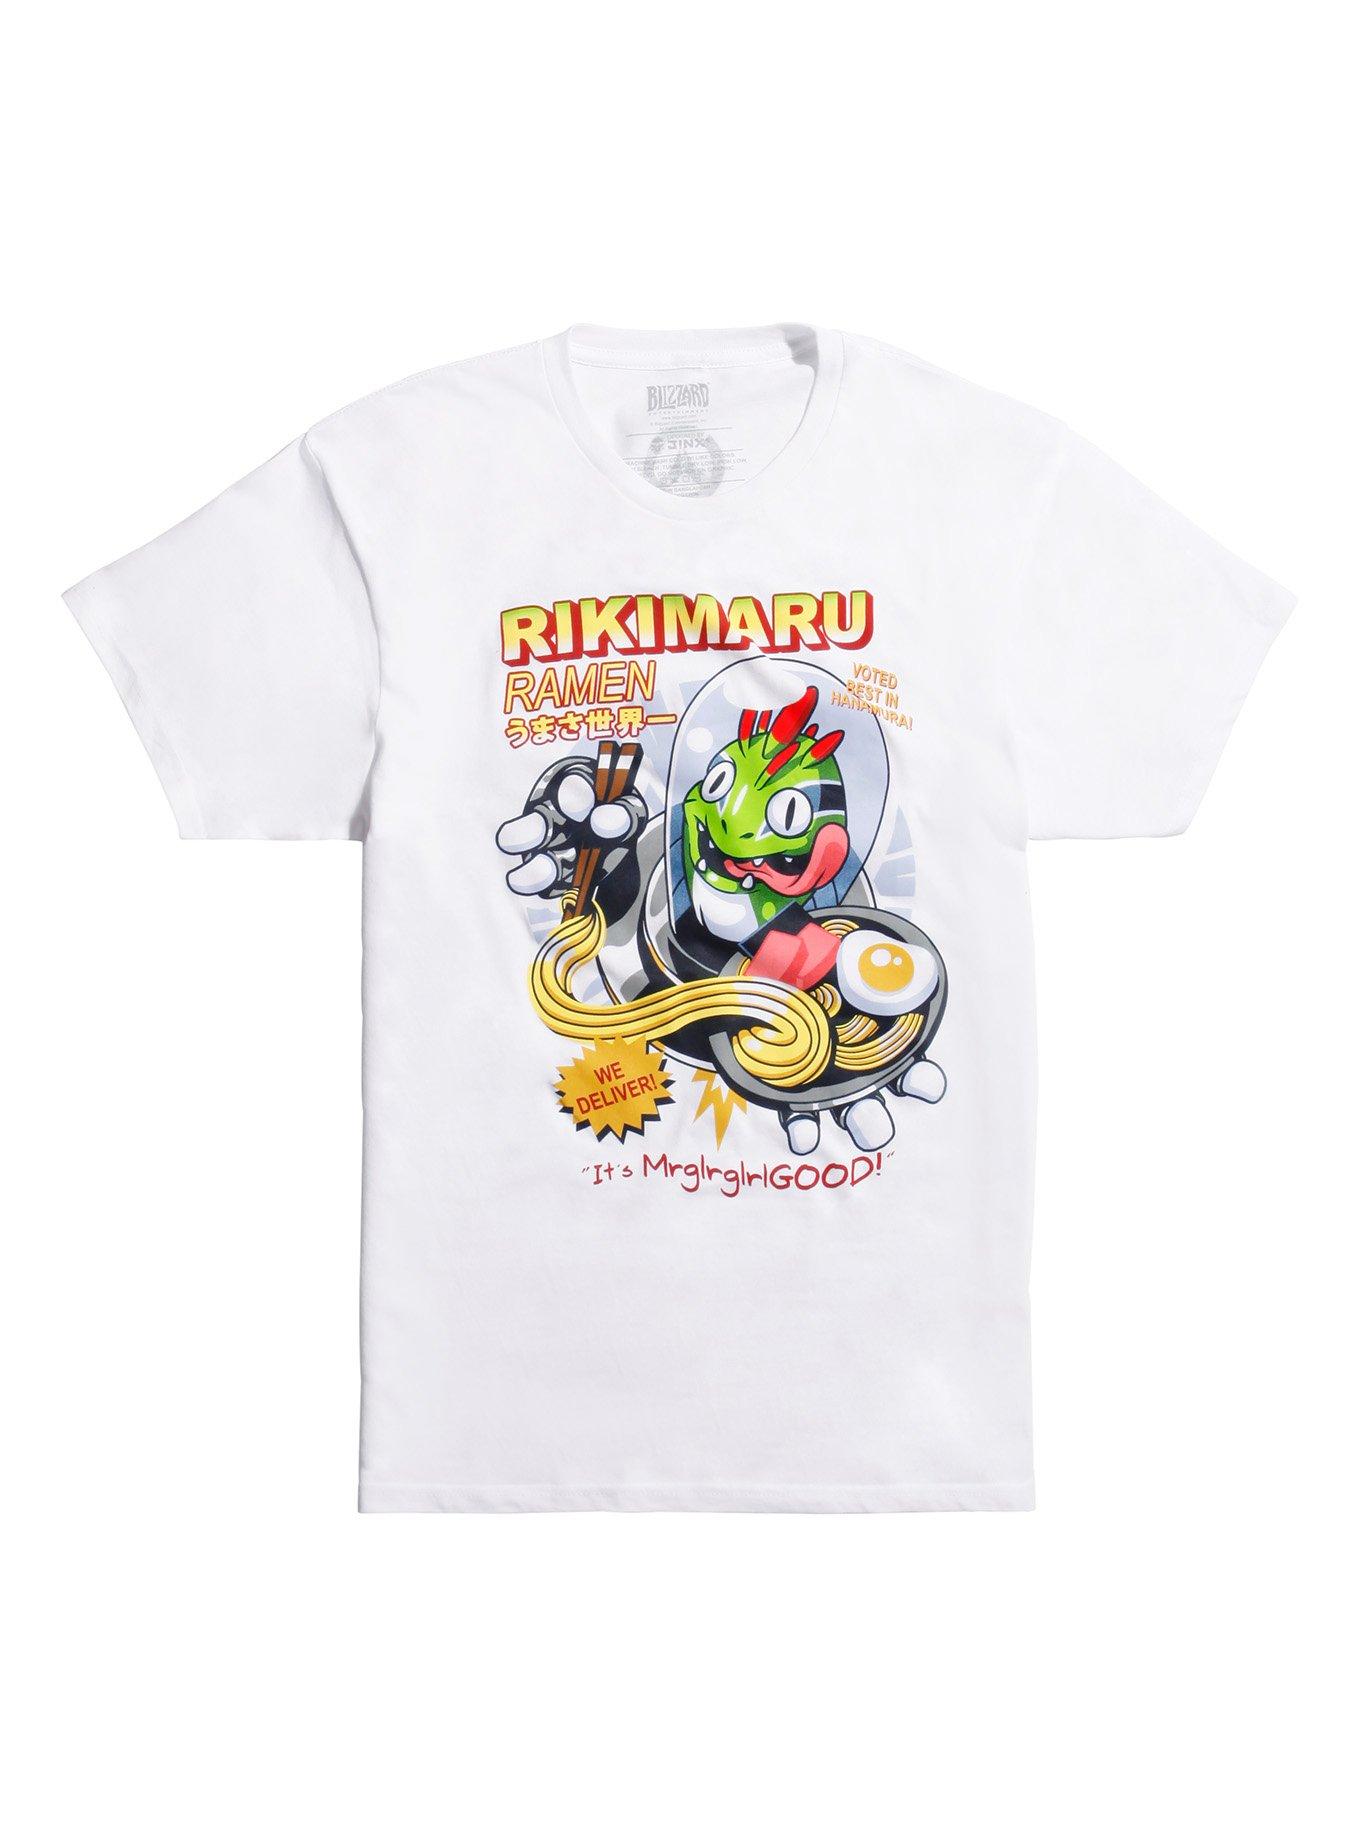 Overwatch Rikimaru T-Shirt | Hot Topic